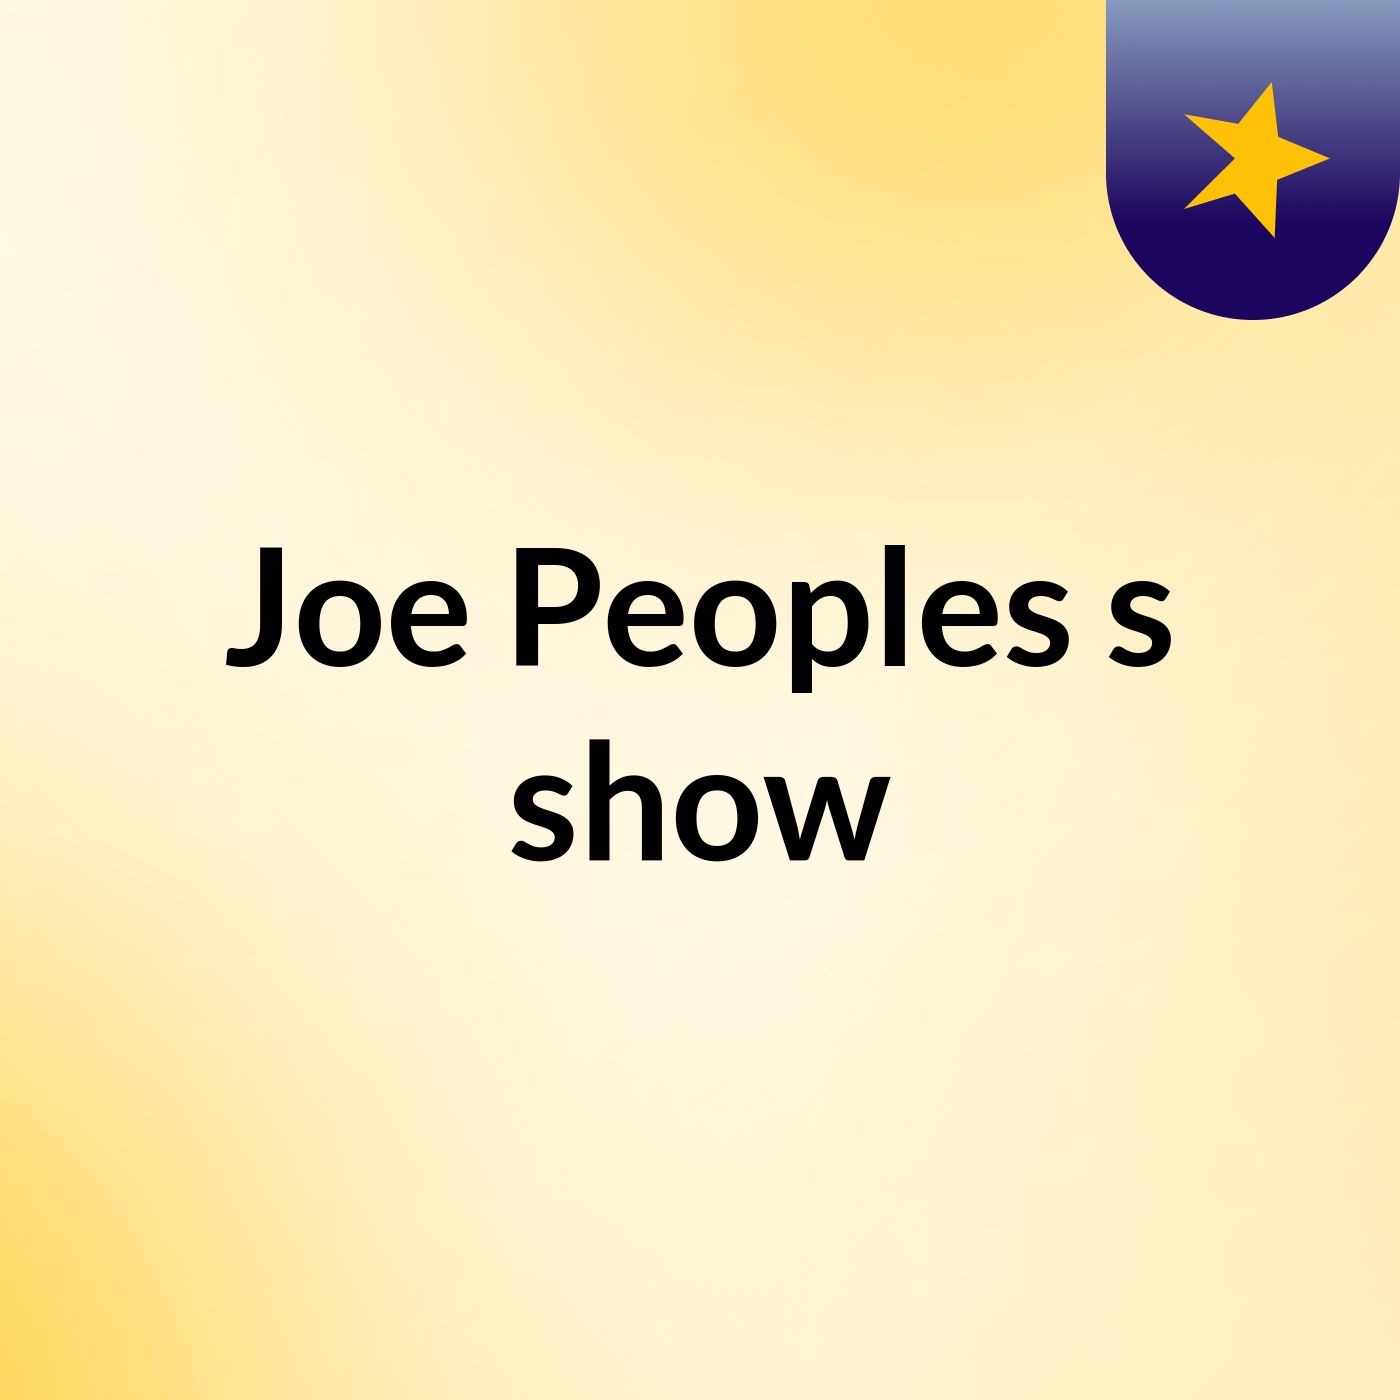 Joe Peoples's show